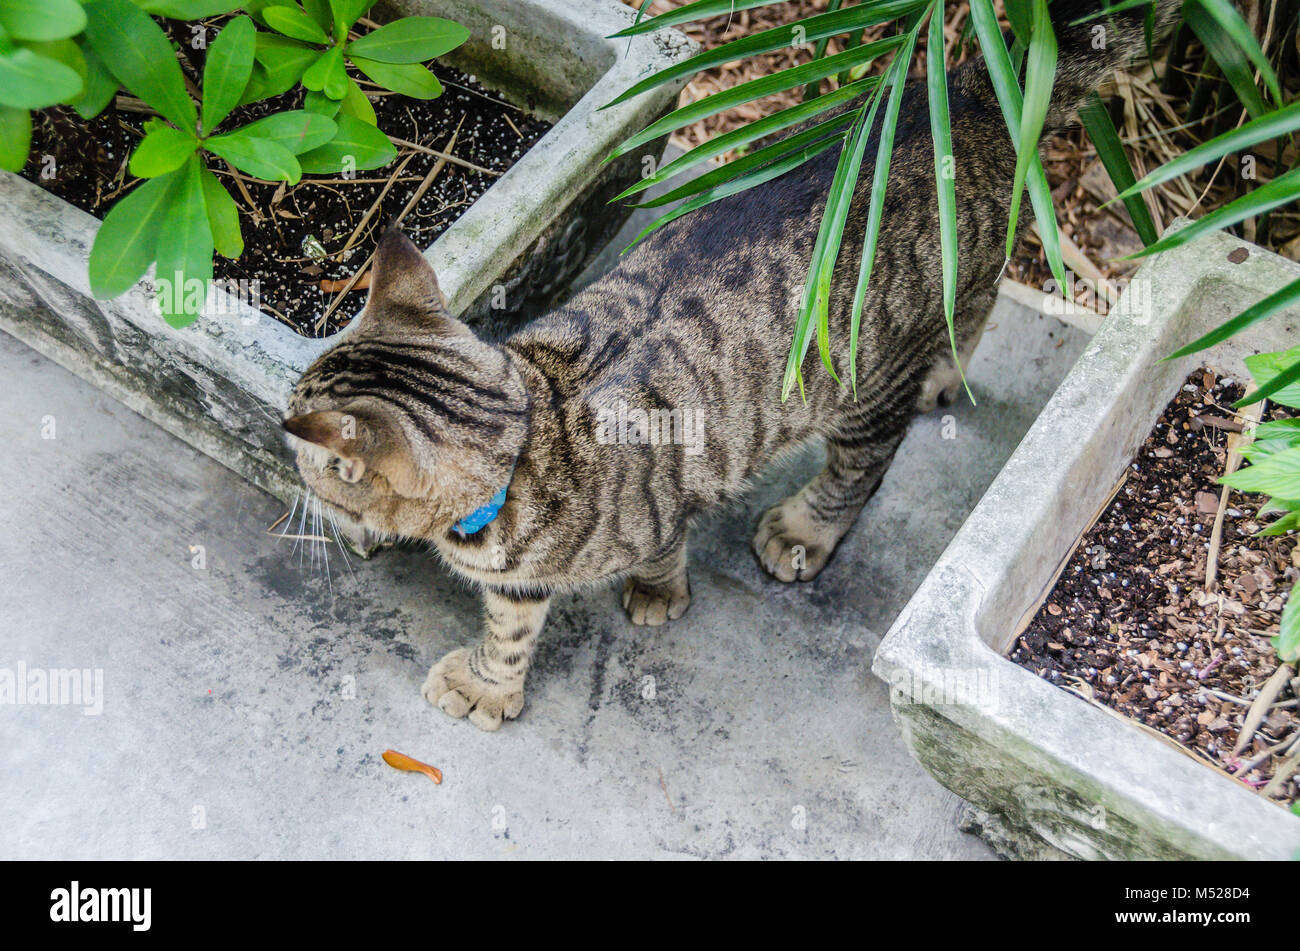 Un descendant du célèbre auteur's six-toed cat rôde dans les jardins de l'Ernest Hemingway Home and Museum. L'Ernest Hemingway Home and Museum est h Banque D'Images